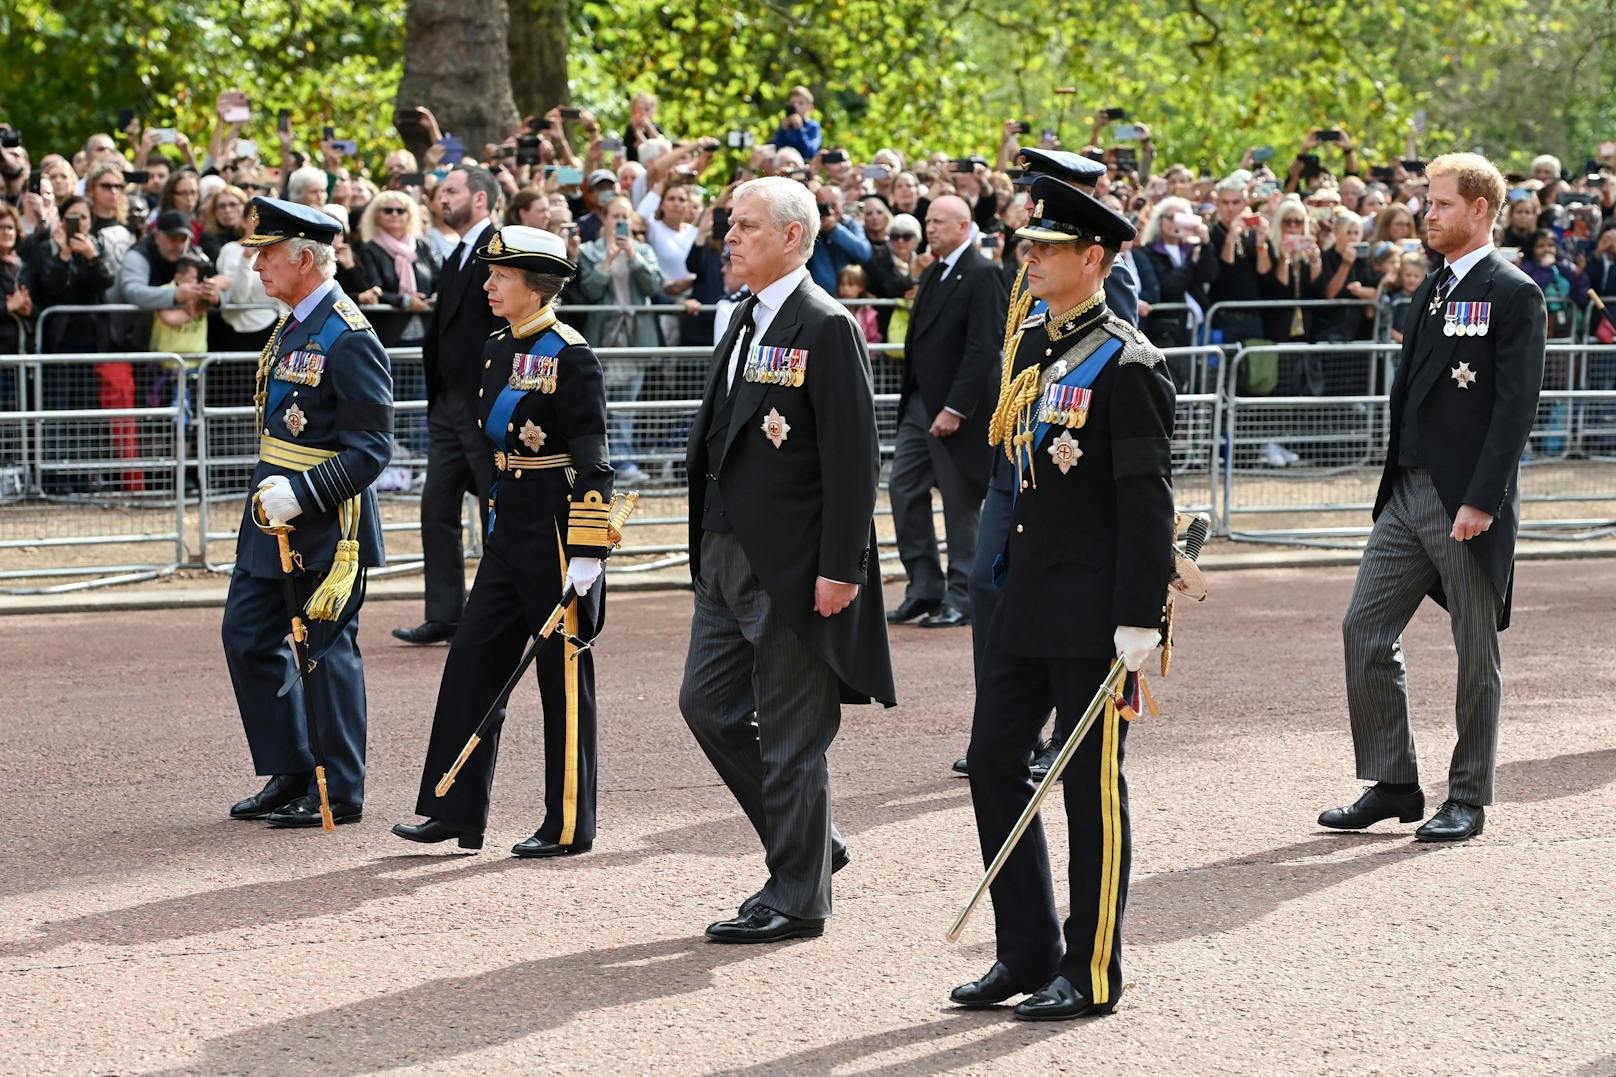 König Karl III., Prinzessin Anne, Prinzessin Royal, Prinz Andrew, Herzog von York, Prinz Edward, Earl of Wessex und Prinz Harry, Herzog von Sussex gehen hinter dem Sarg entlang.